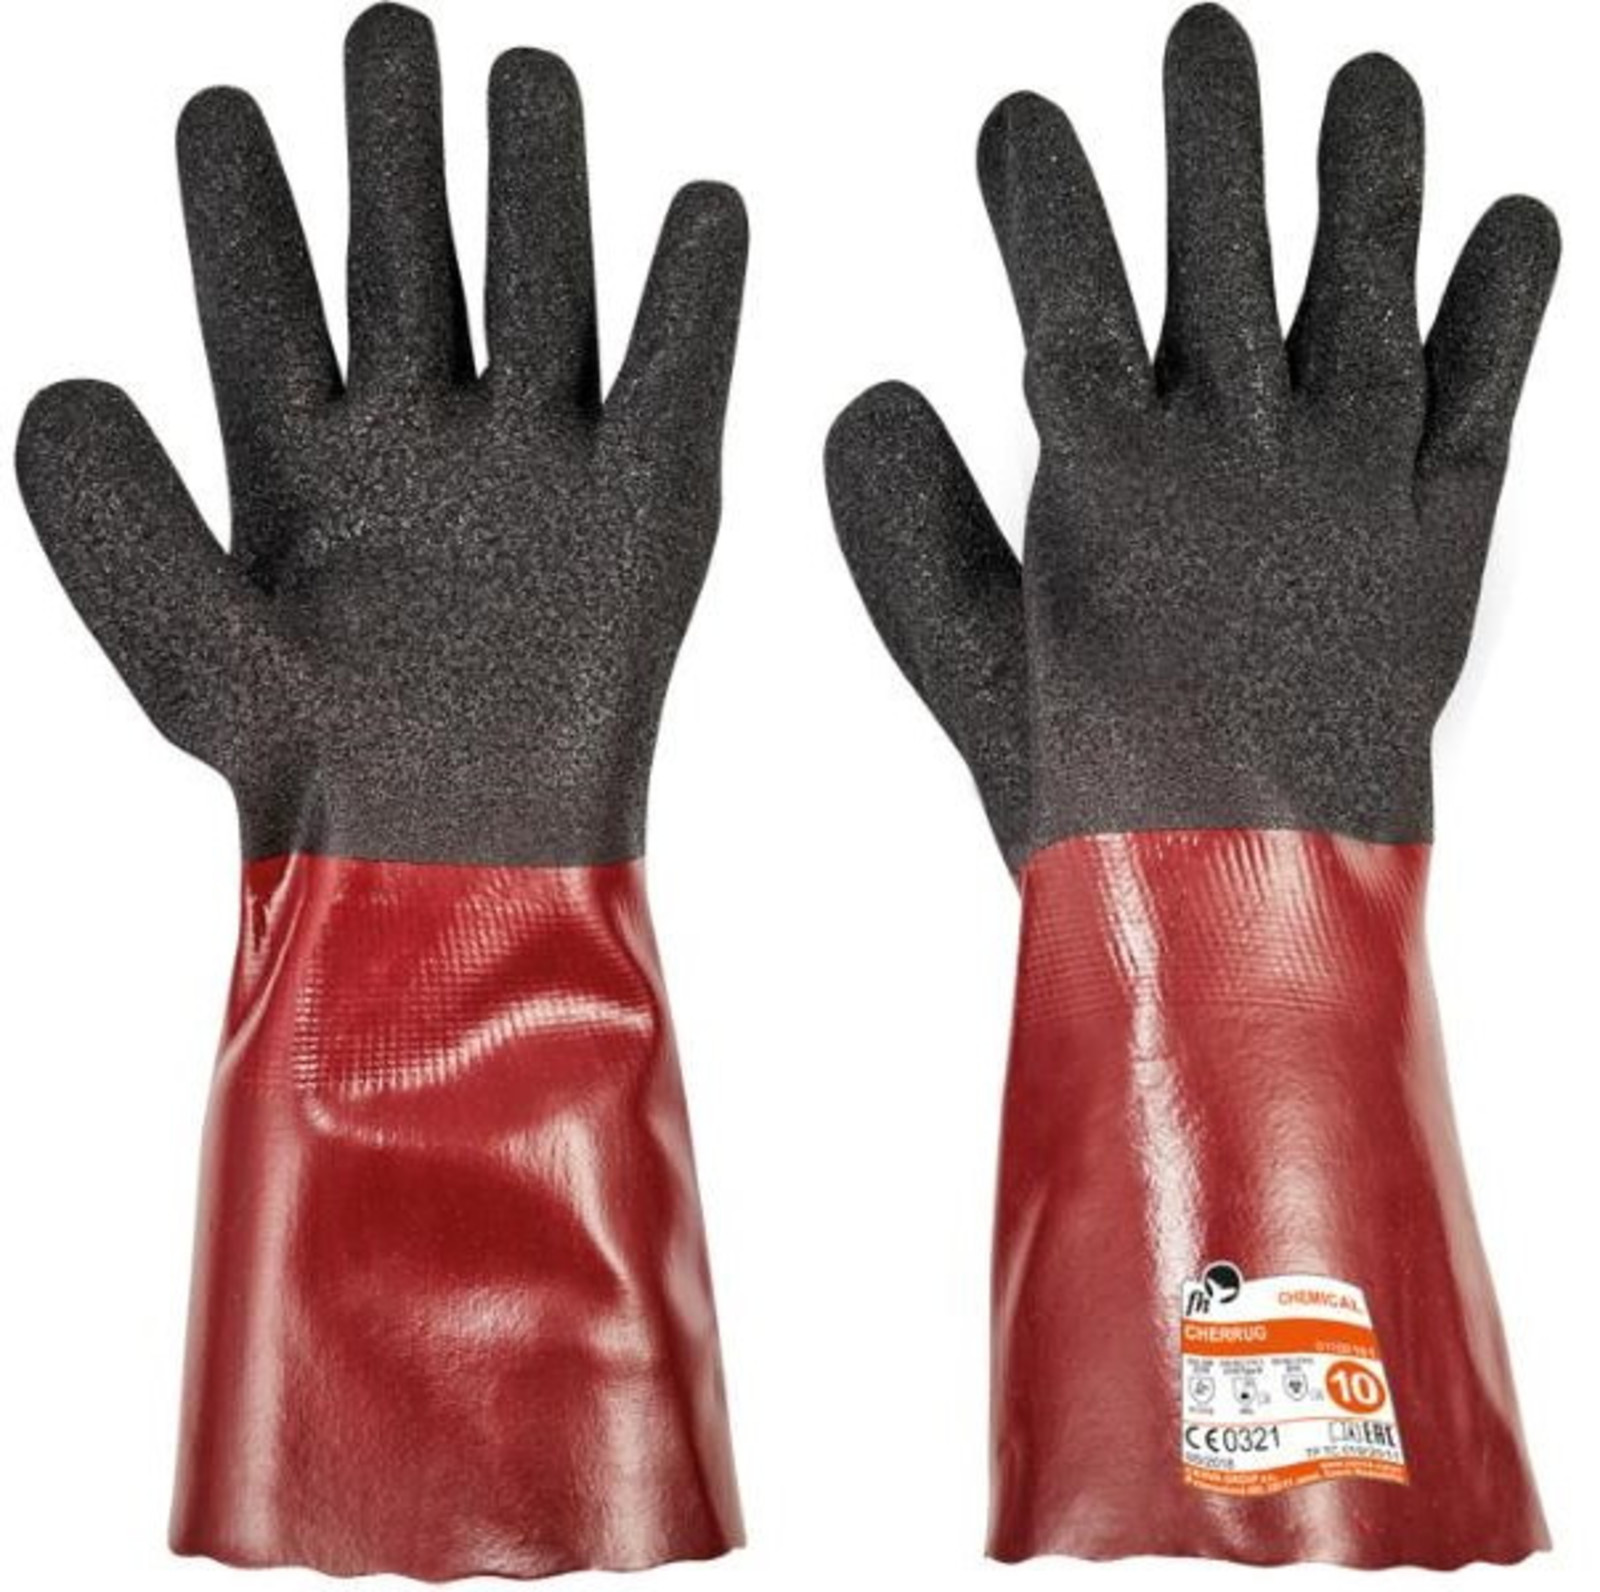 Rukavice Free Hand Cherrug - veľkosť: 8/M, farba: čierna/červená